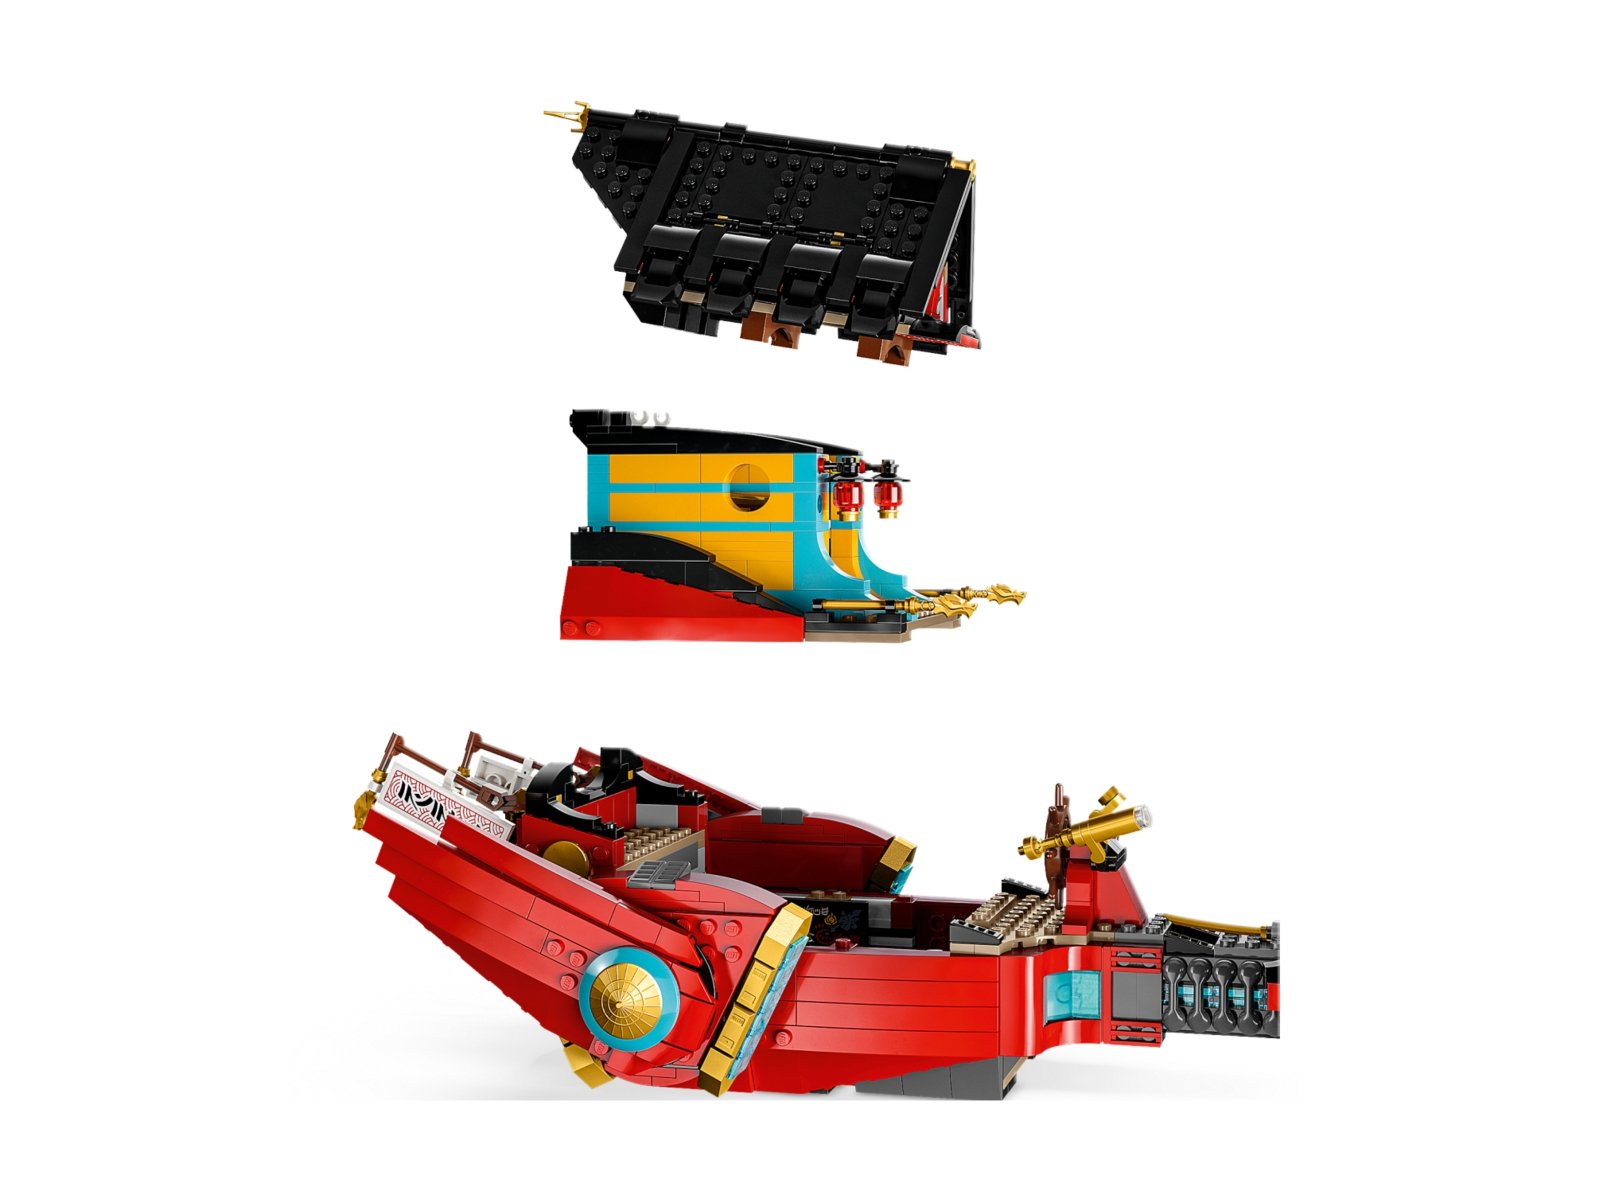 LEGO Ninjago Perła Przeznaczenia — wyścig z czasem 71797